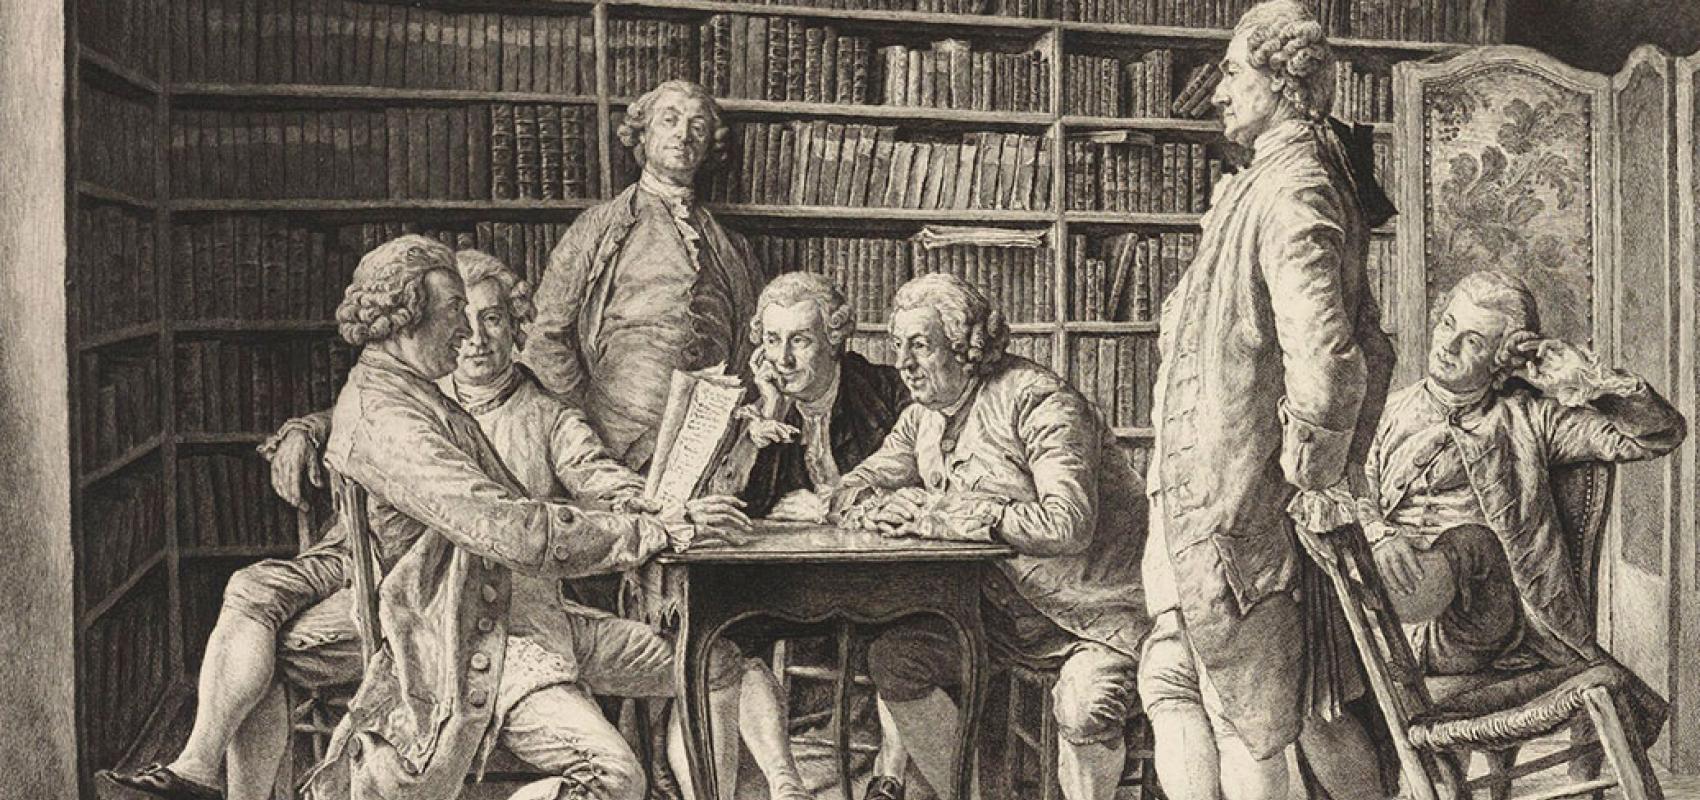 "La lecture chez Diderot" par Ernest Meissonier (1815-1891), dessinateur ; Louis Monziès (1849-1930), graveur - 1888 - BnF